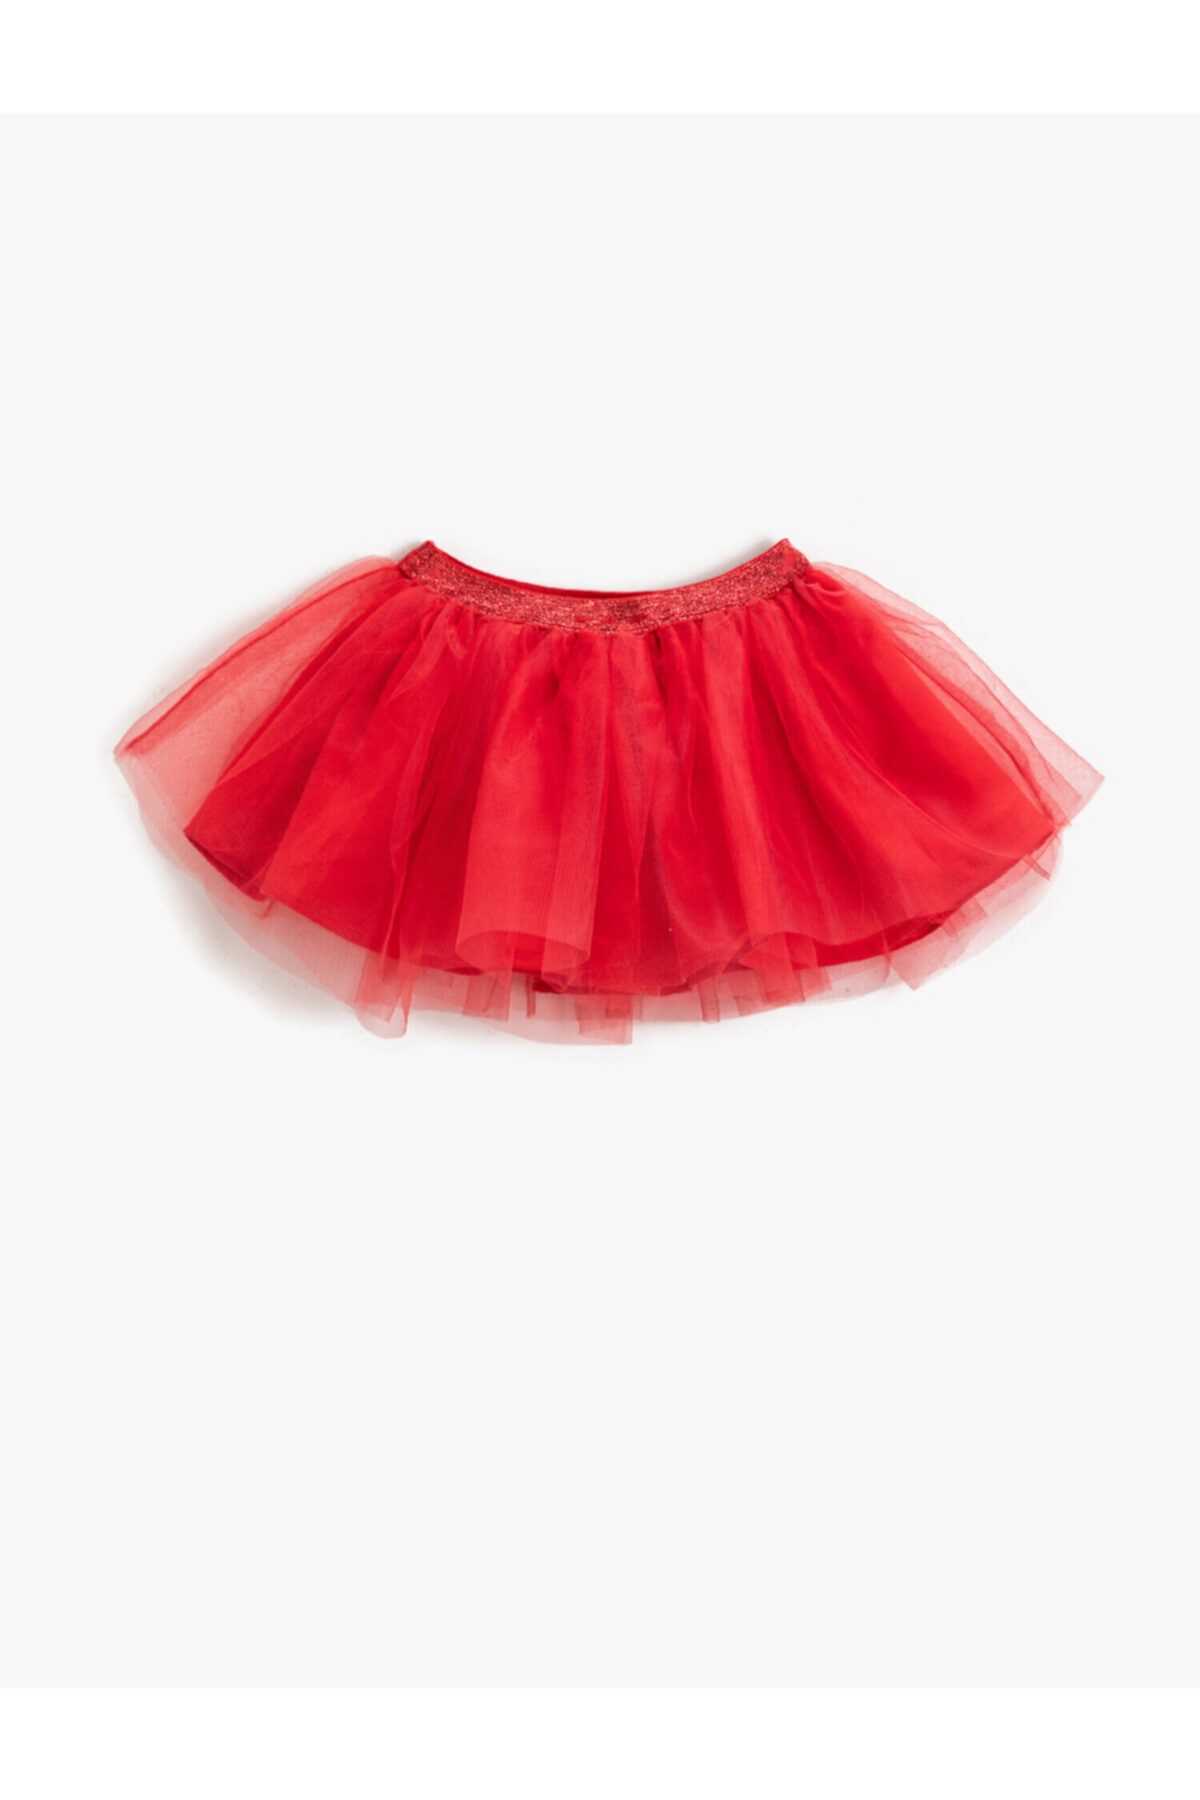 فروش دامن نوزاد دخترانه ارزانی برند کوتون رنگ قرمز ty187294936